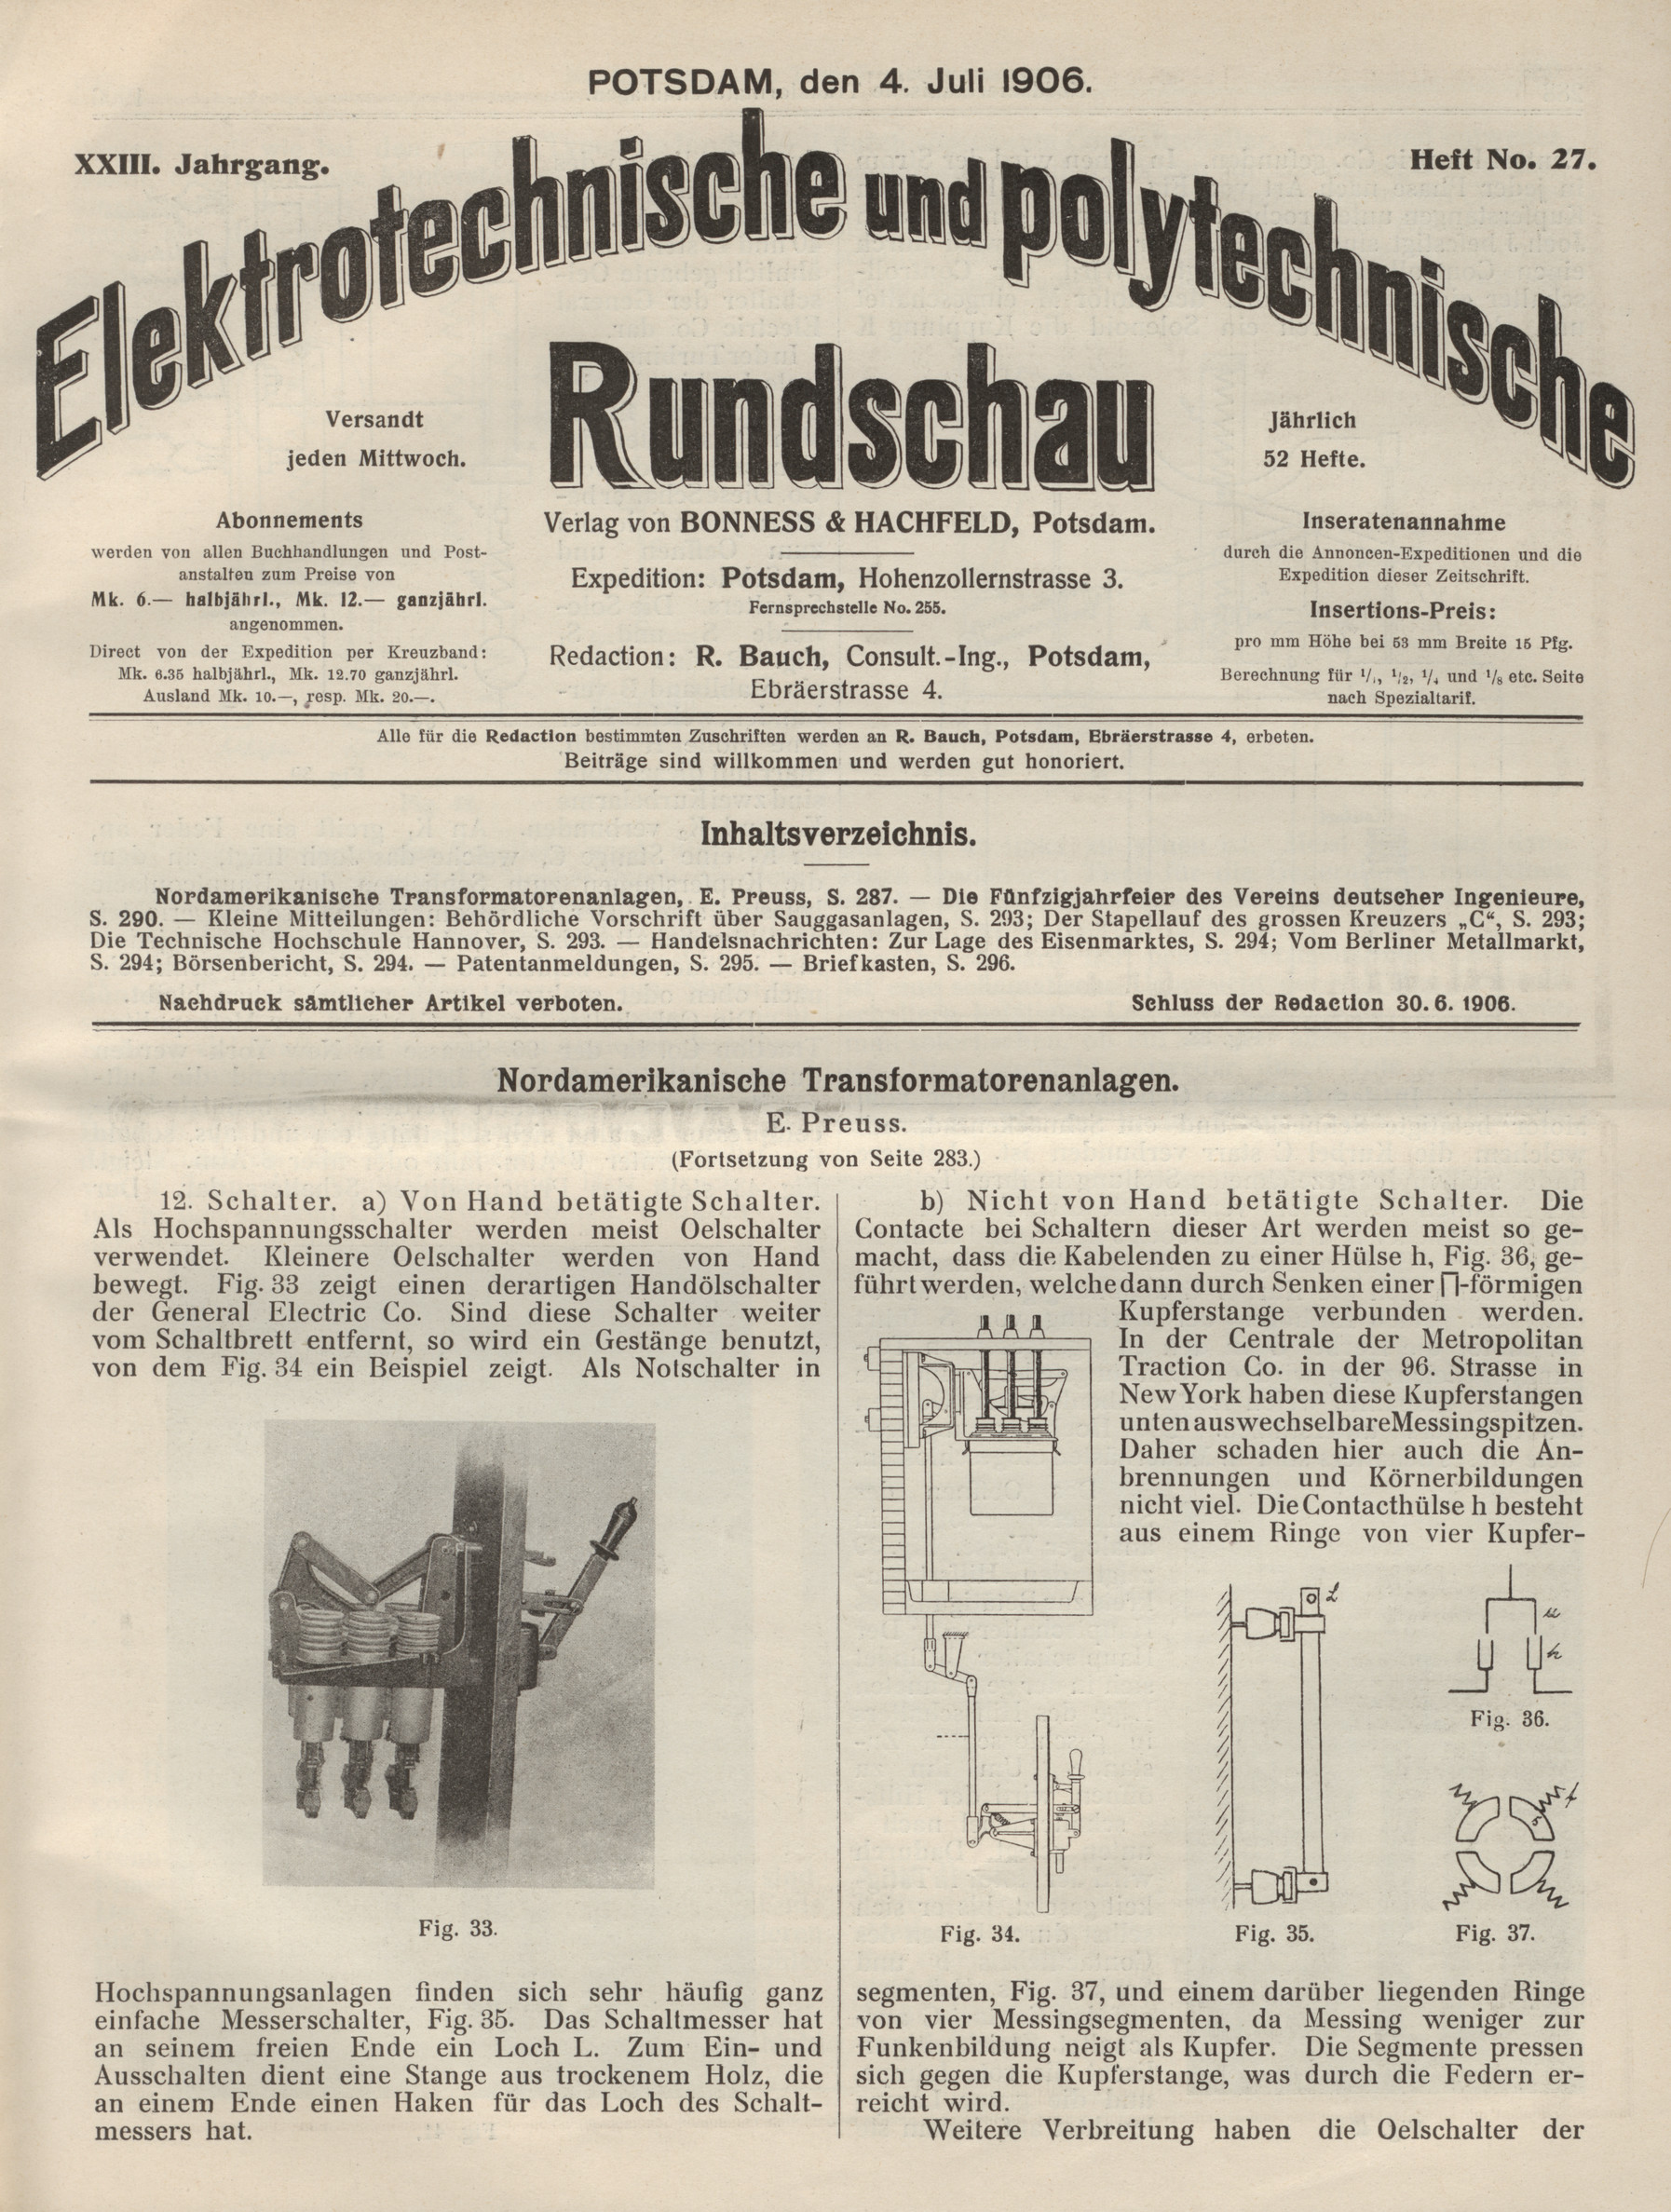 Elektrotechnische und polytechnische Rundschau, XXIII. Jahrgang, Heft No. 27